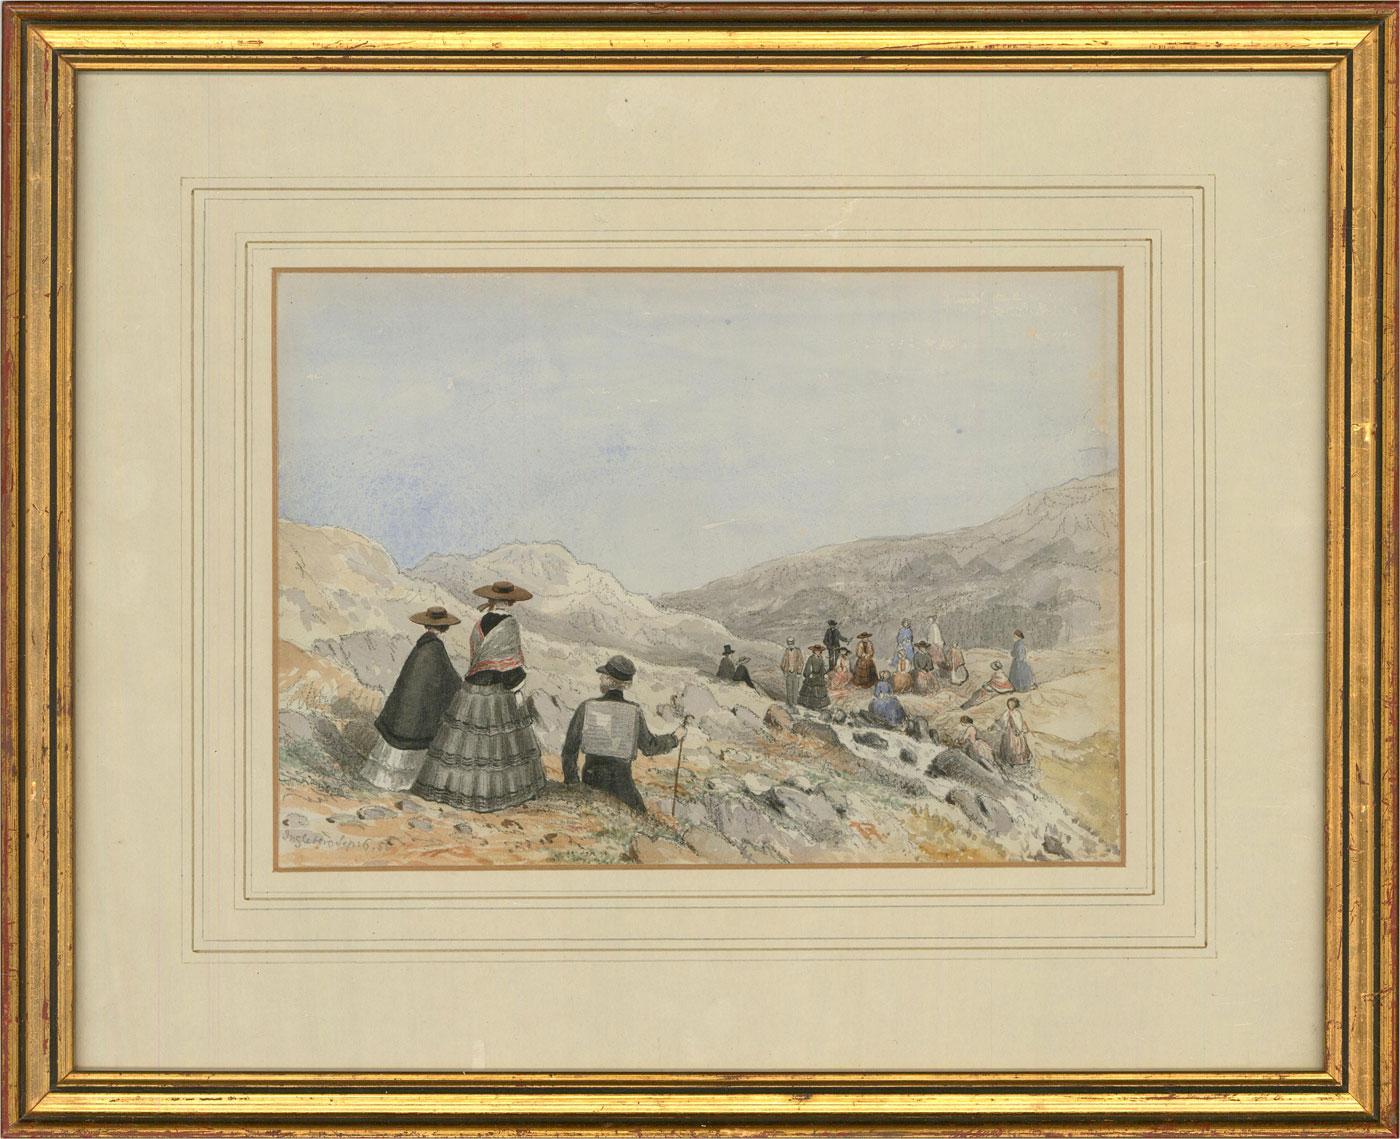 Une belle aquarelle du milieu du 19e siècle représentant une expédition de randonnée sur le pic d'Ingleborough dans les Yorkshire Dales. Un grand groupe de randonneurs en tenue victorienne, se repose sur les rochers. Cette charmante scène a été